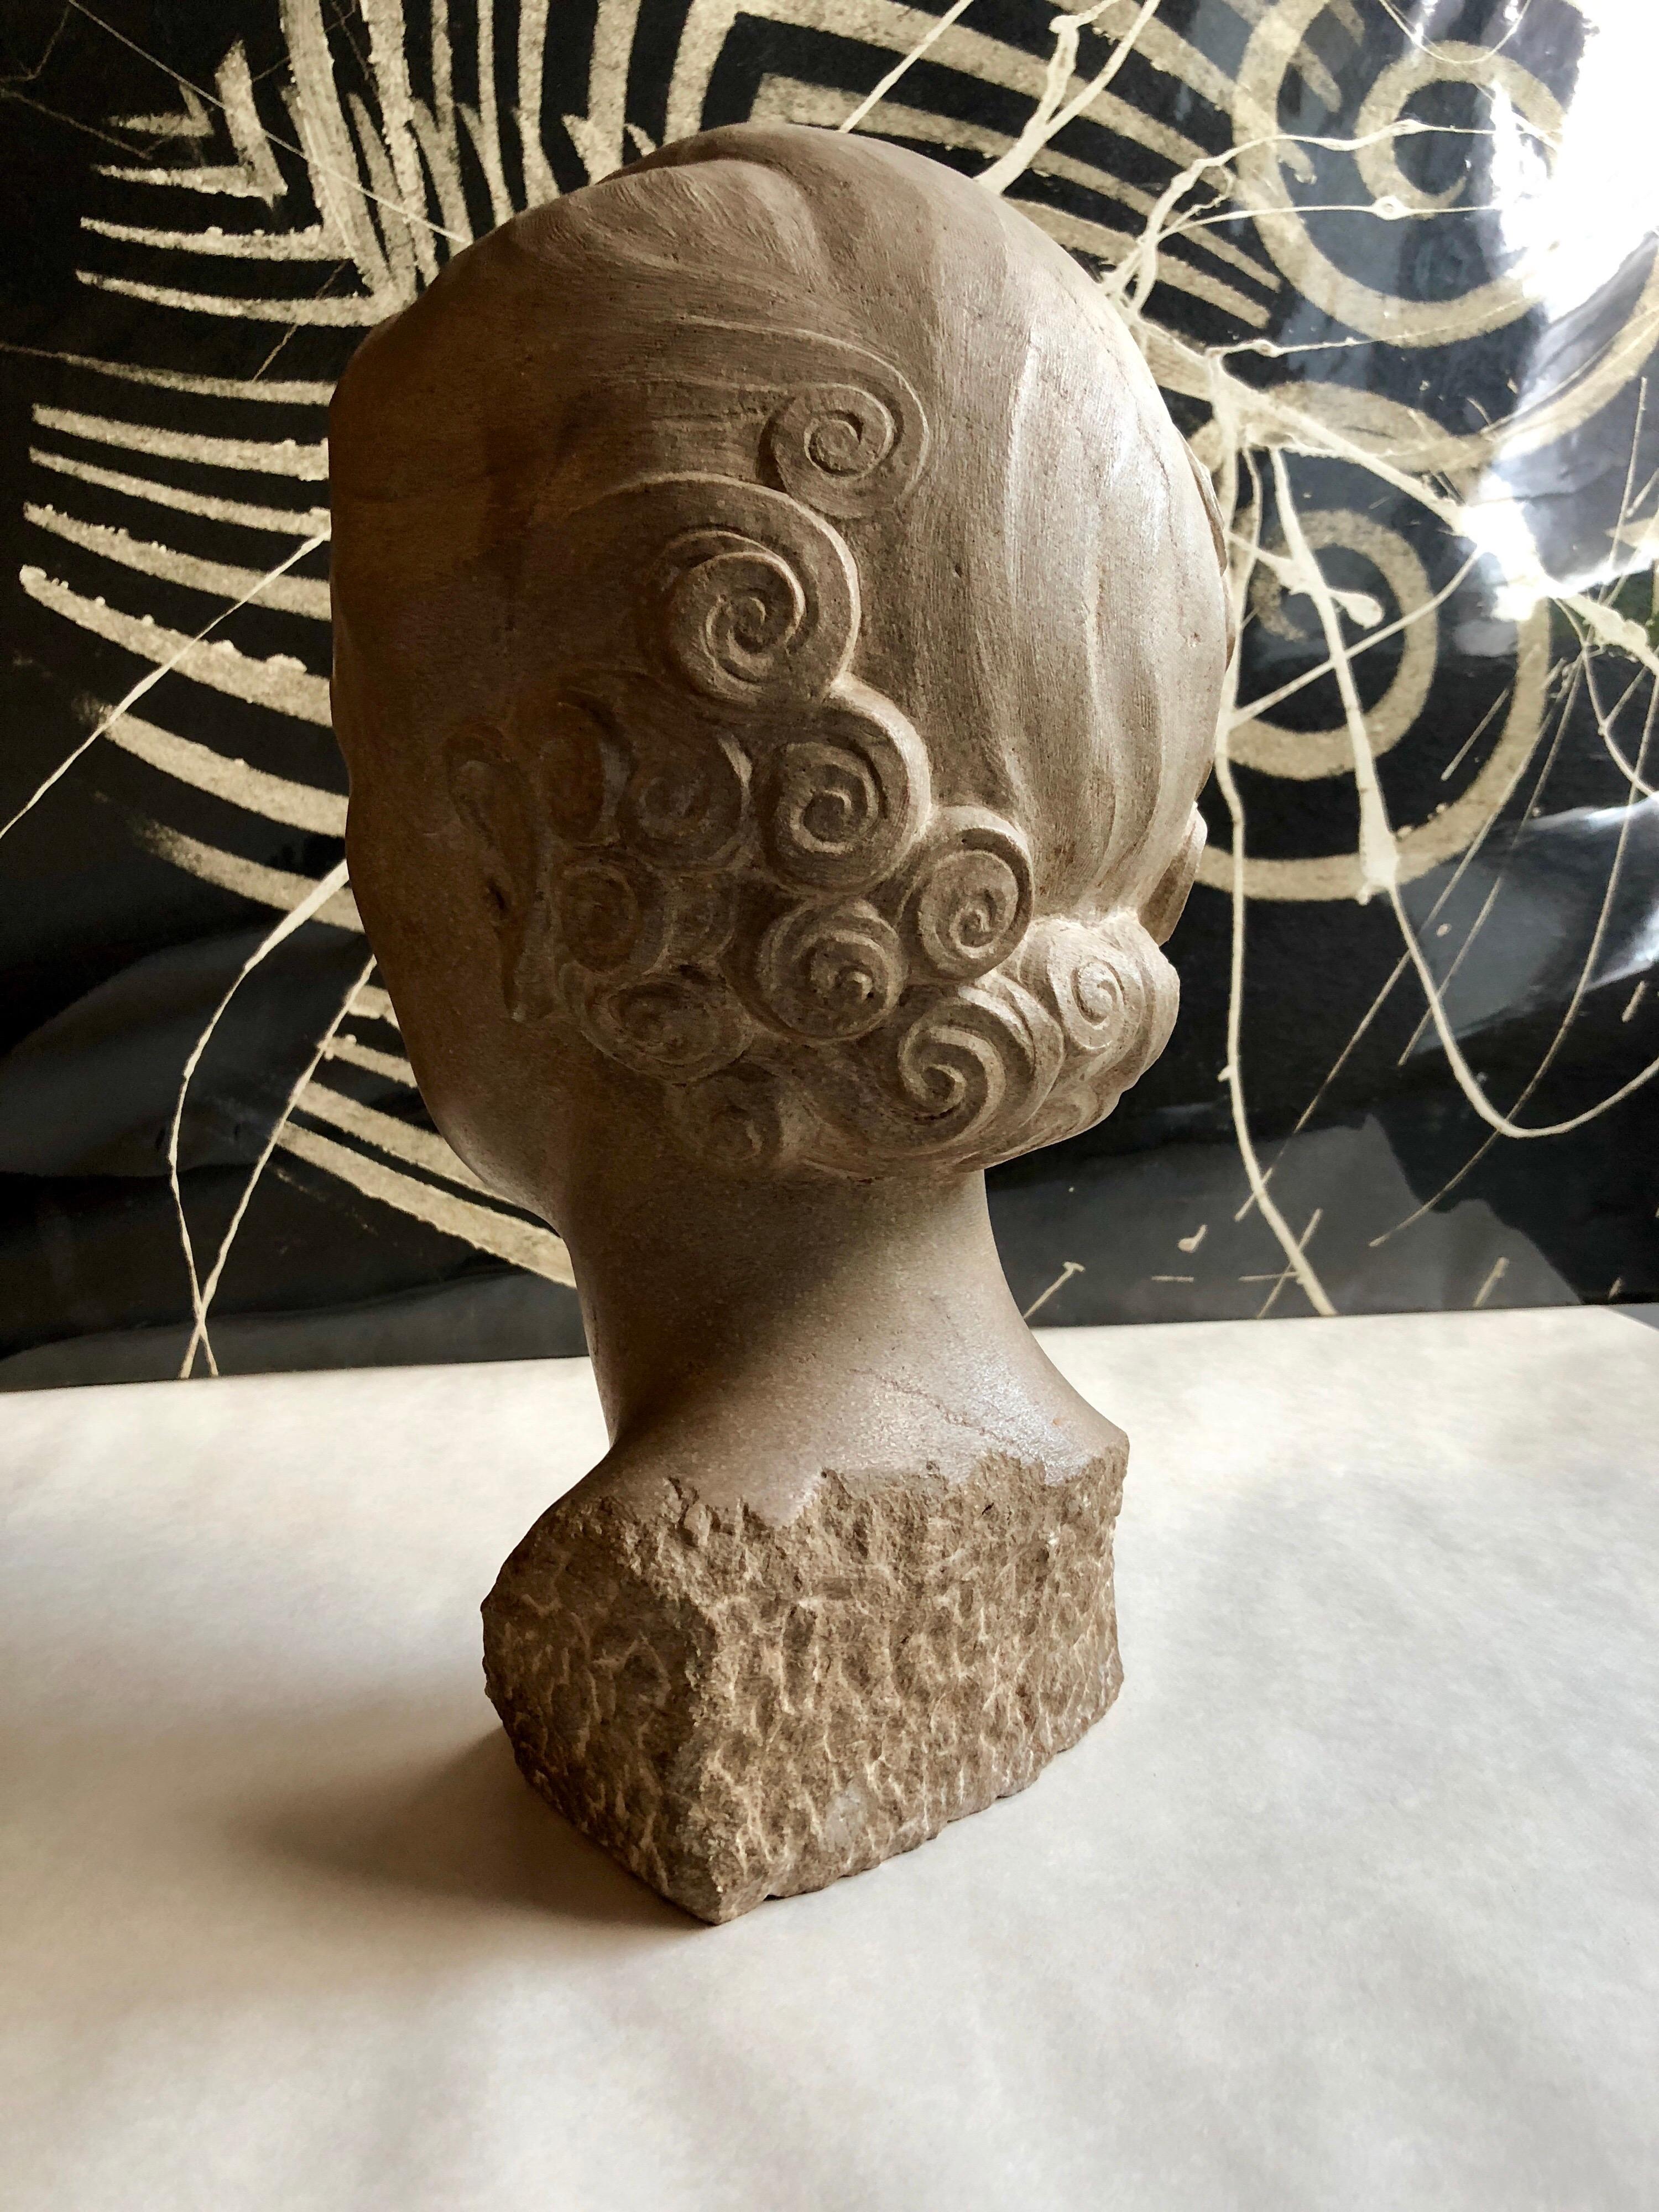 Il s'agit d'un buste de sculpture de portrait d'une femme flapper. La modèle était Frances Widney, (Mme Robert Gump de la famille de San Francisco qui possédait les grands magasins Gump's). Cette vente aux enchères porte sur la sculpture et les